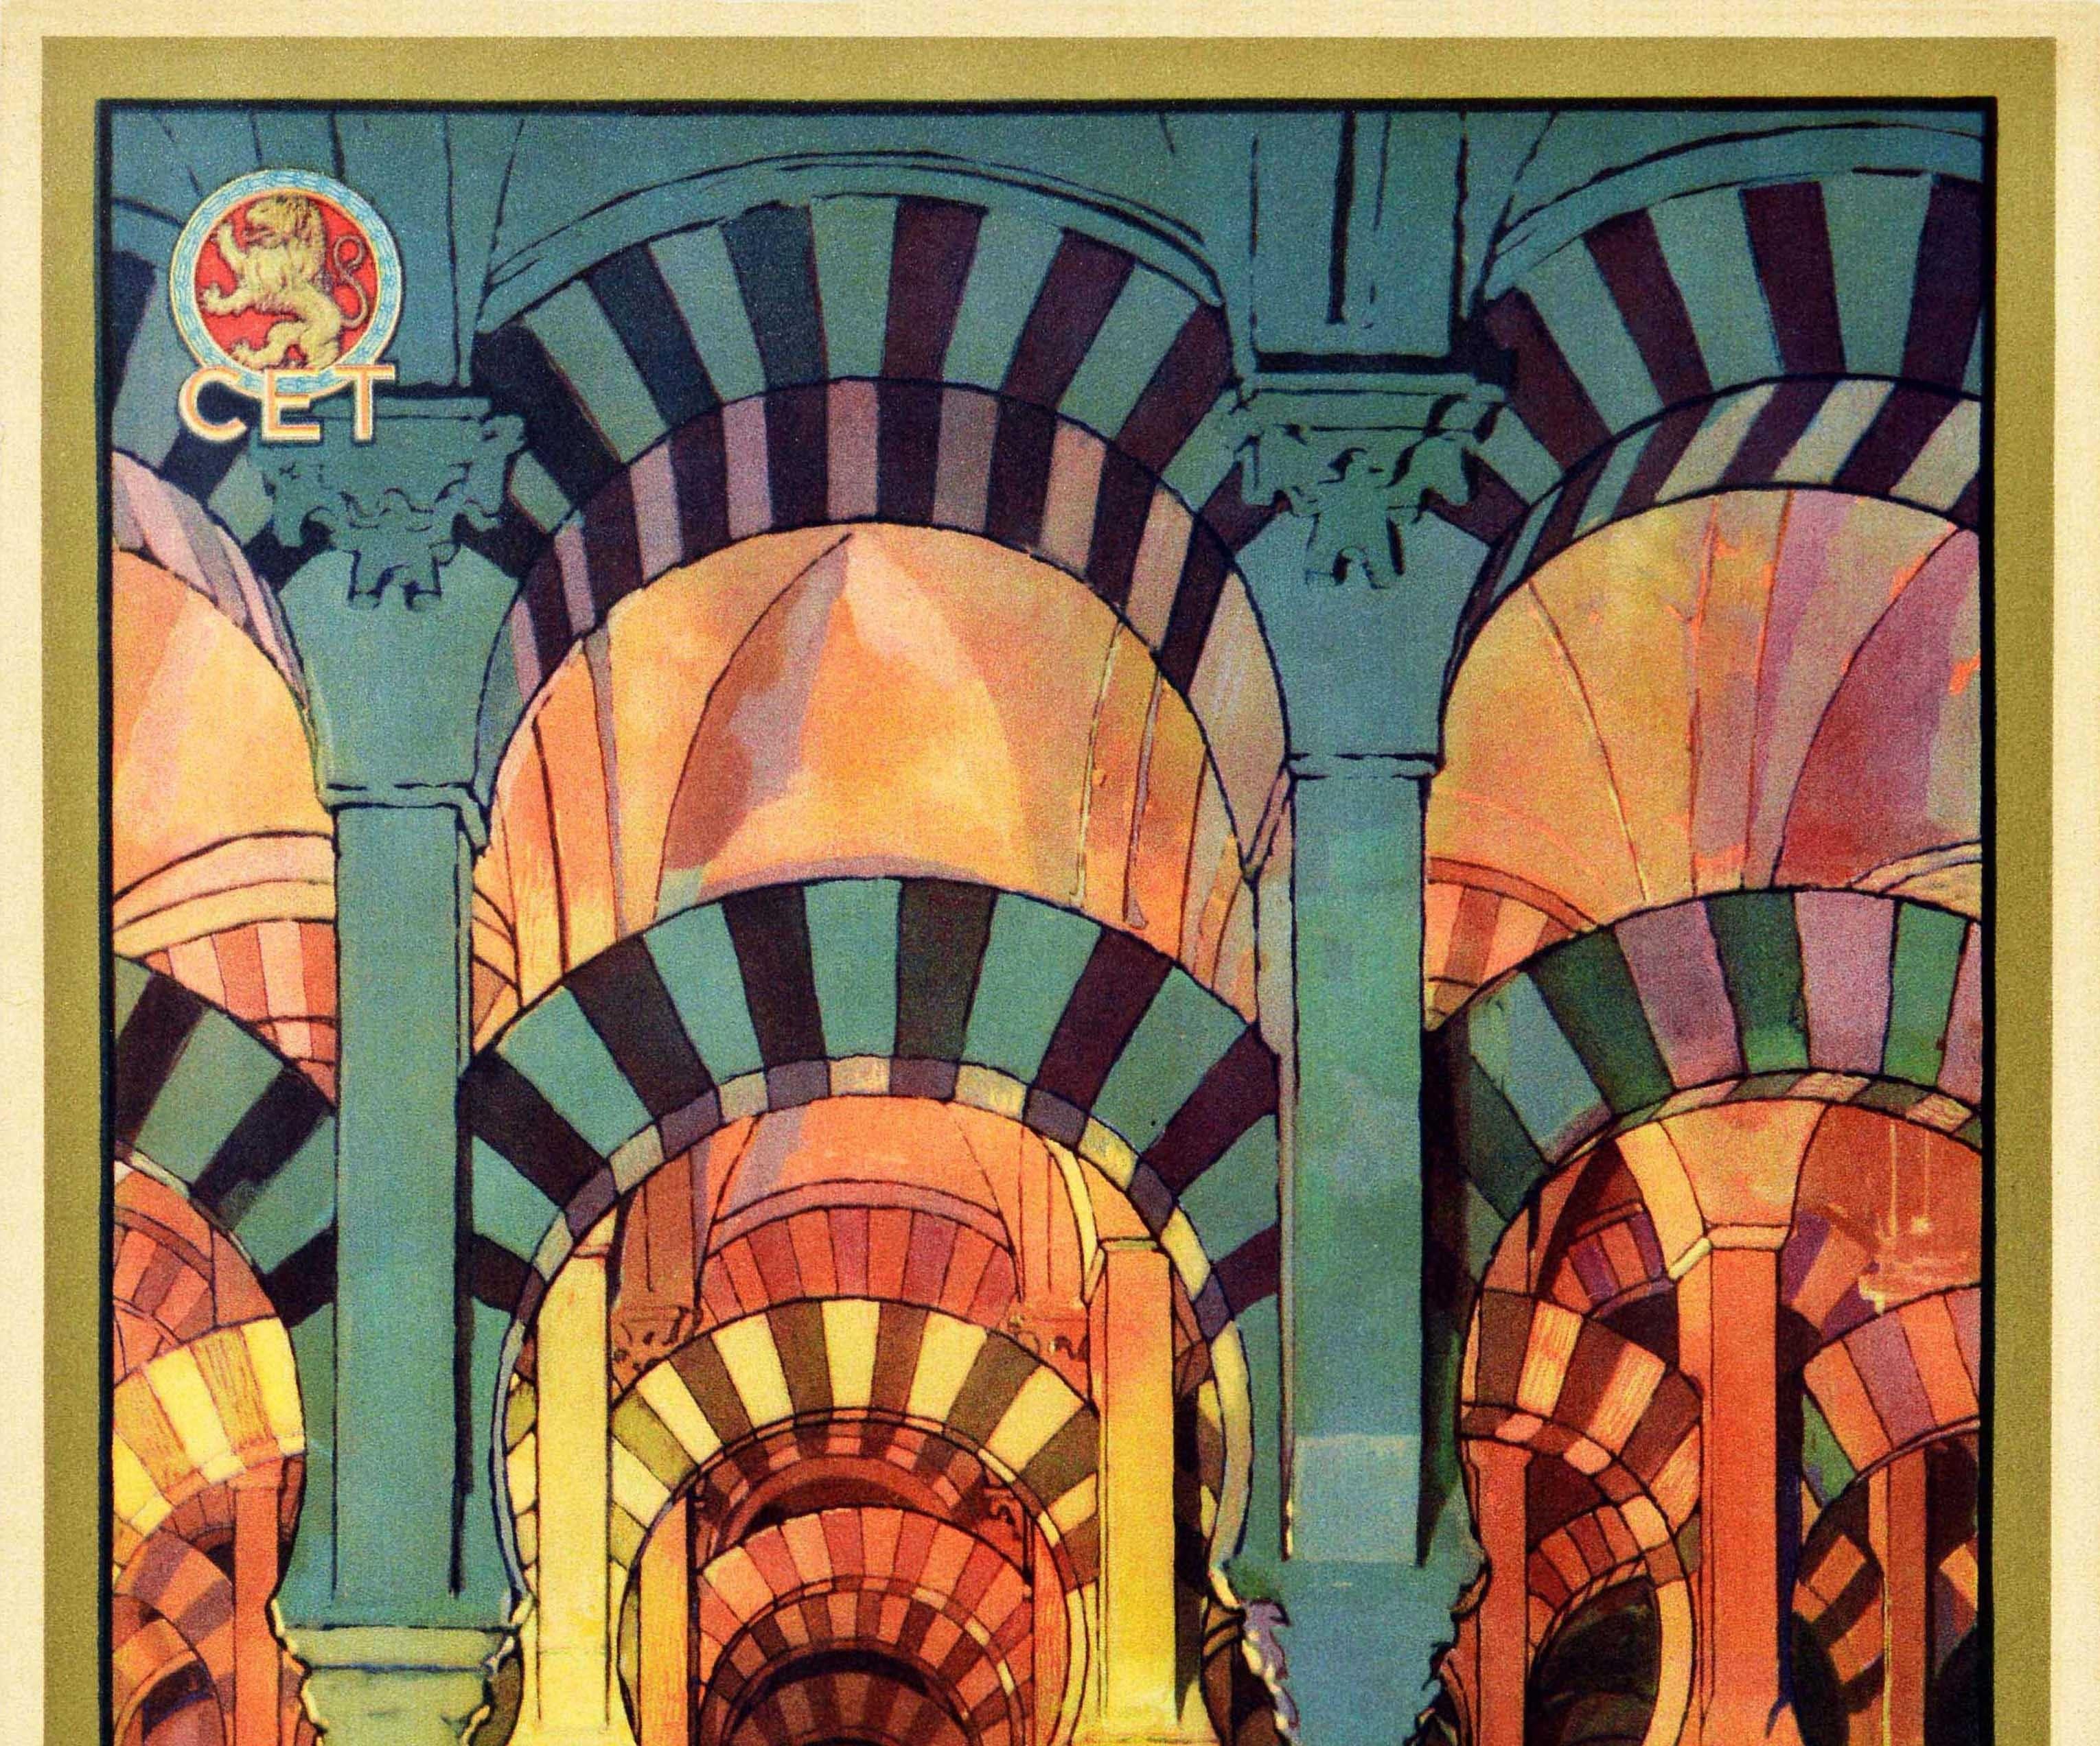 Original Vintage Travel Poster Visitad Cordoba La Ciudad De Los Califas Mezquita - Print by J. Segrelles